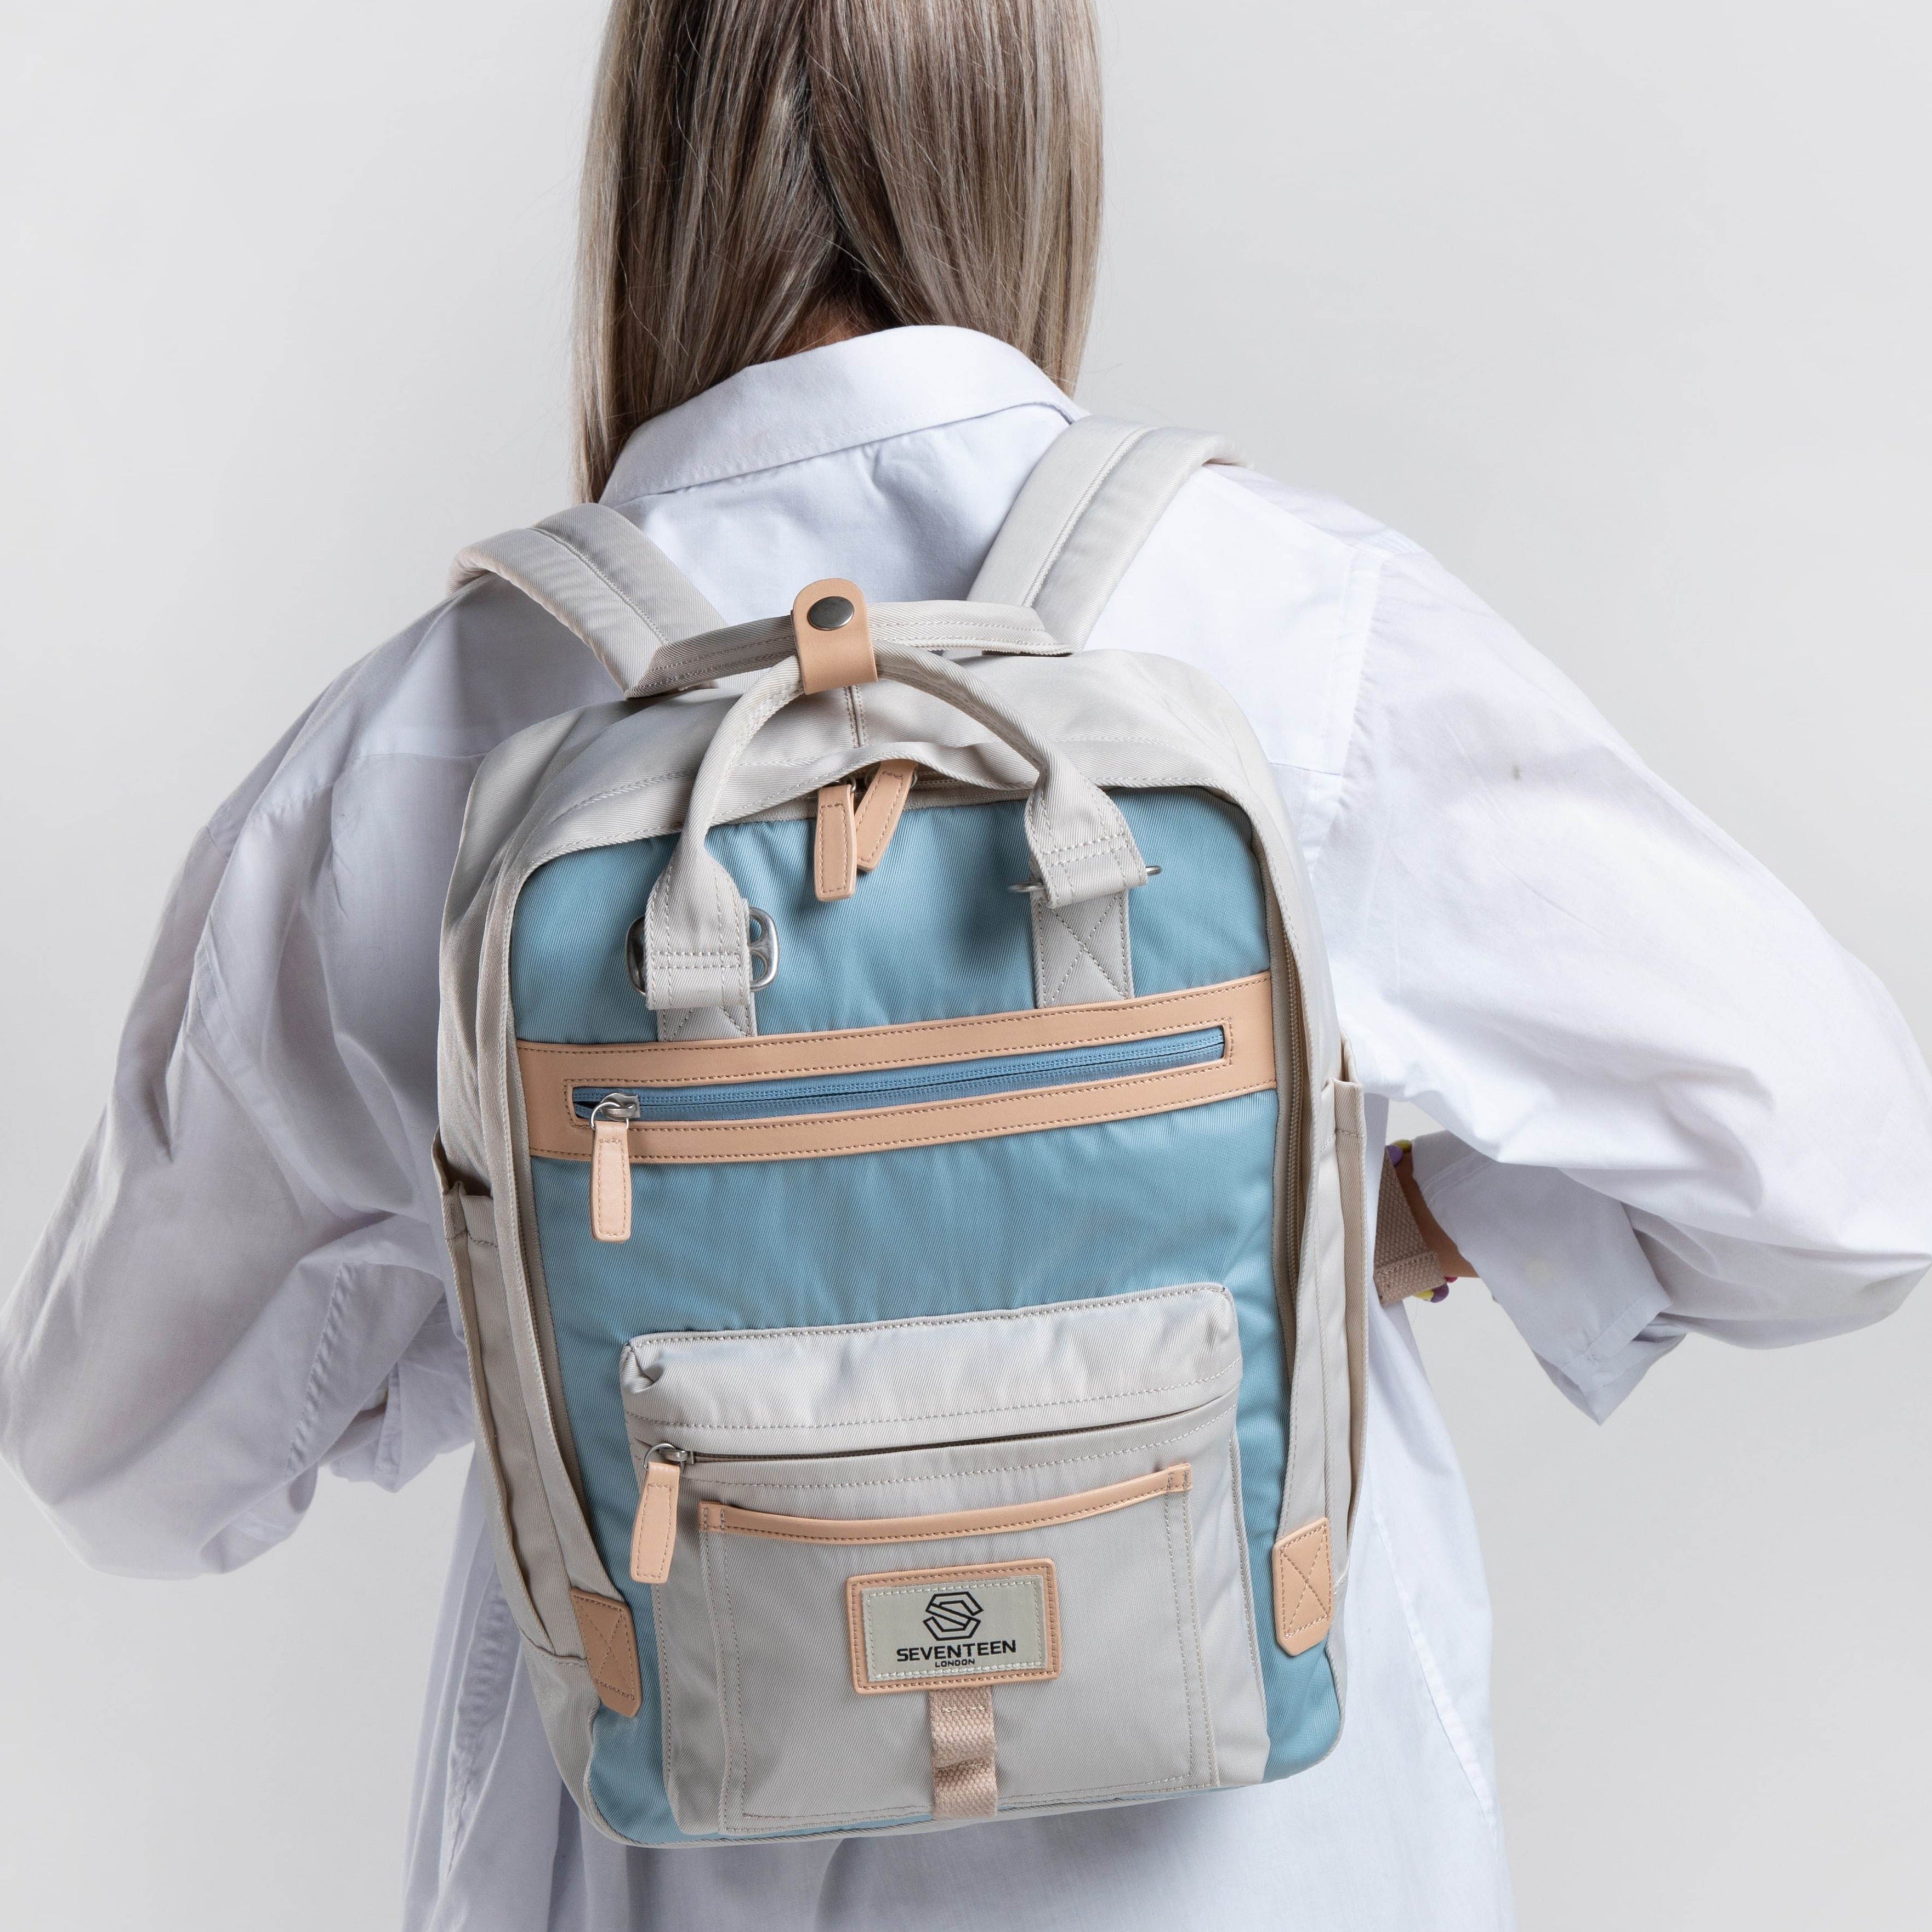 Wimbledon Backpack - Cream with Light Blue - Seventeen London